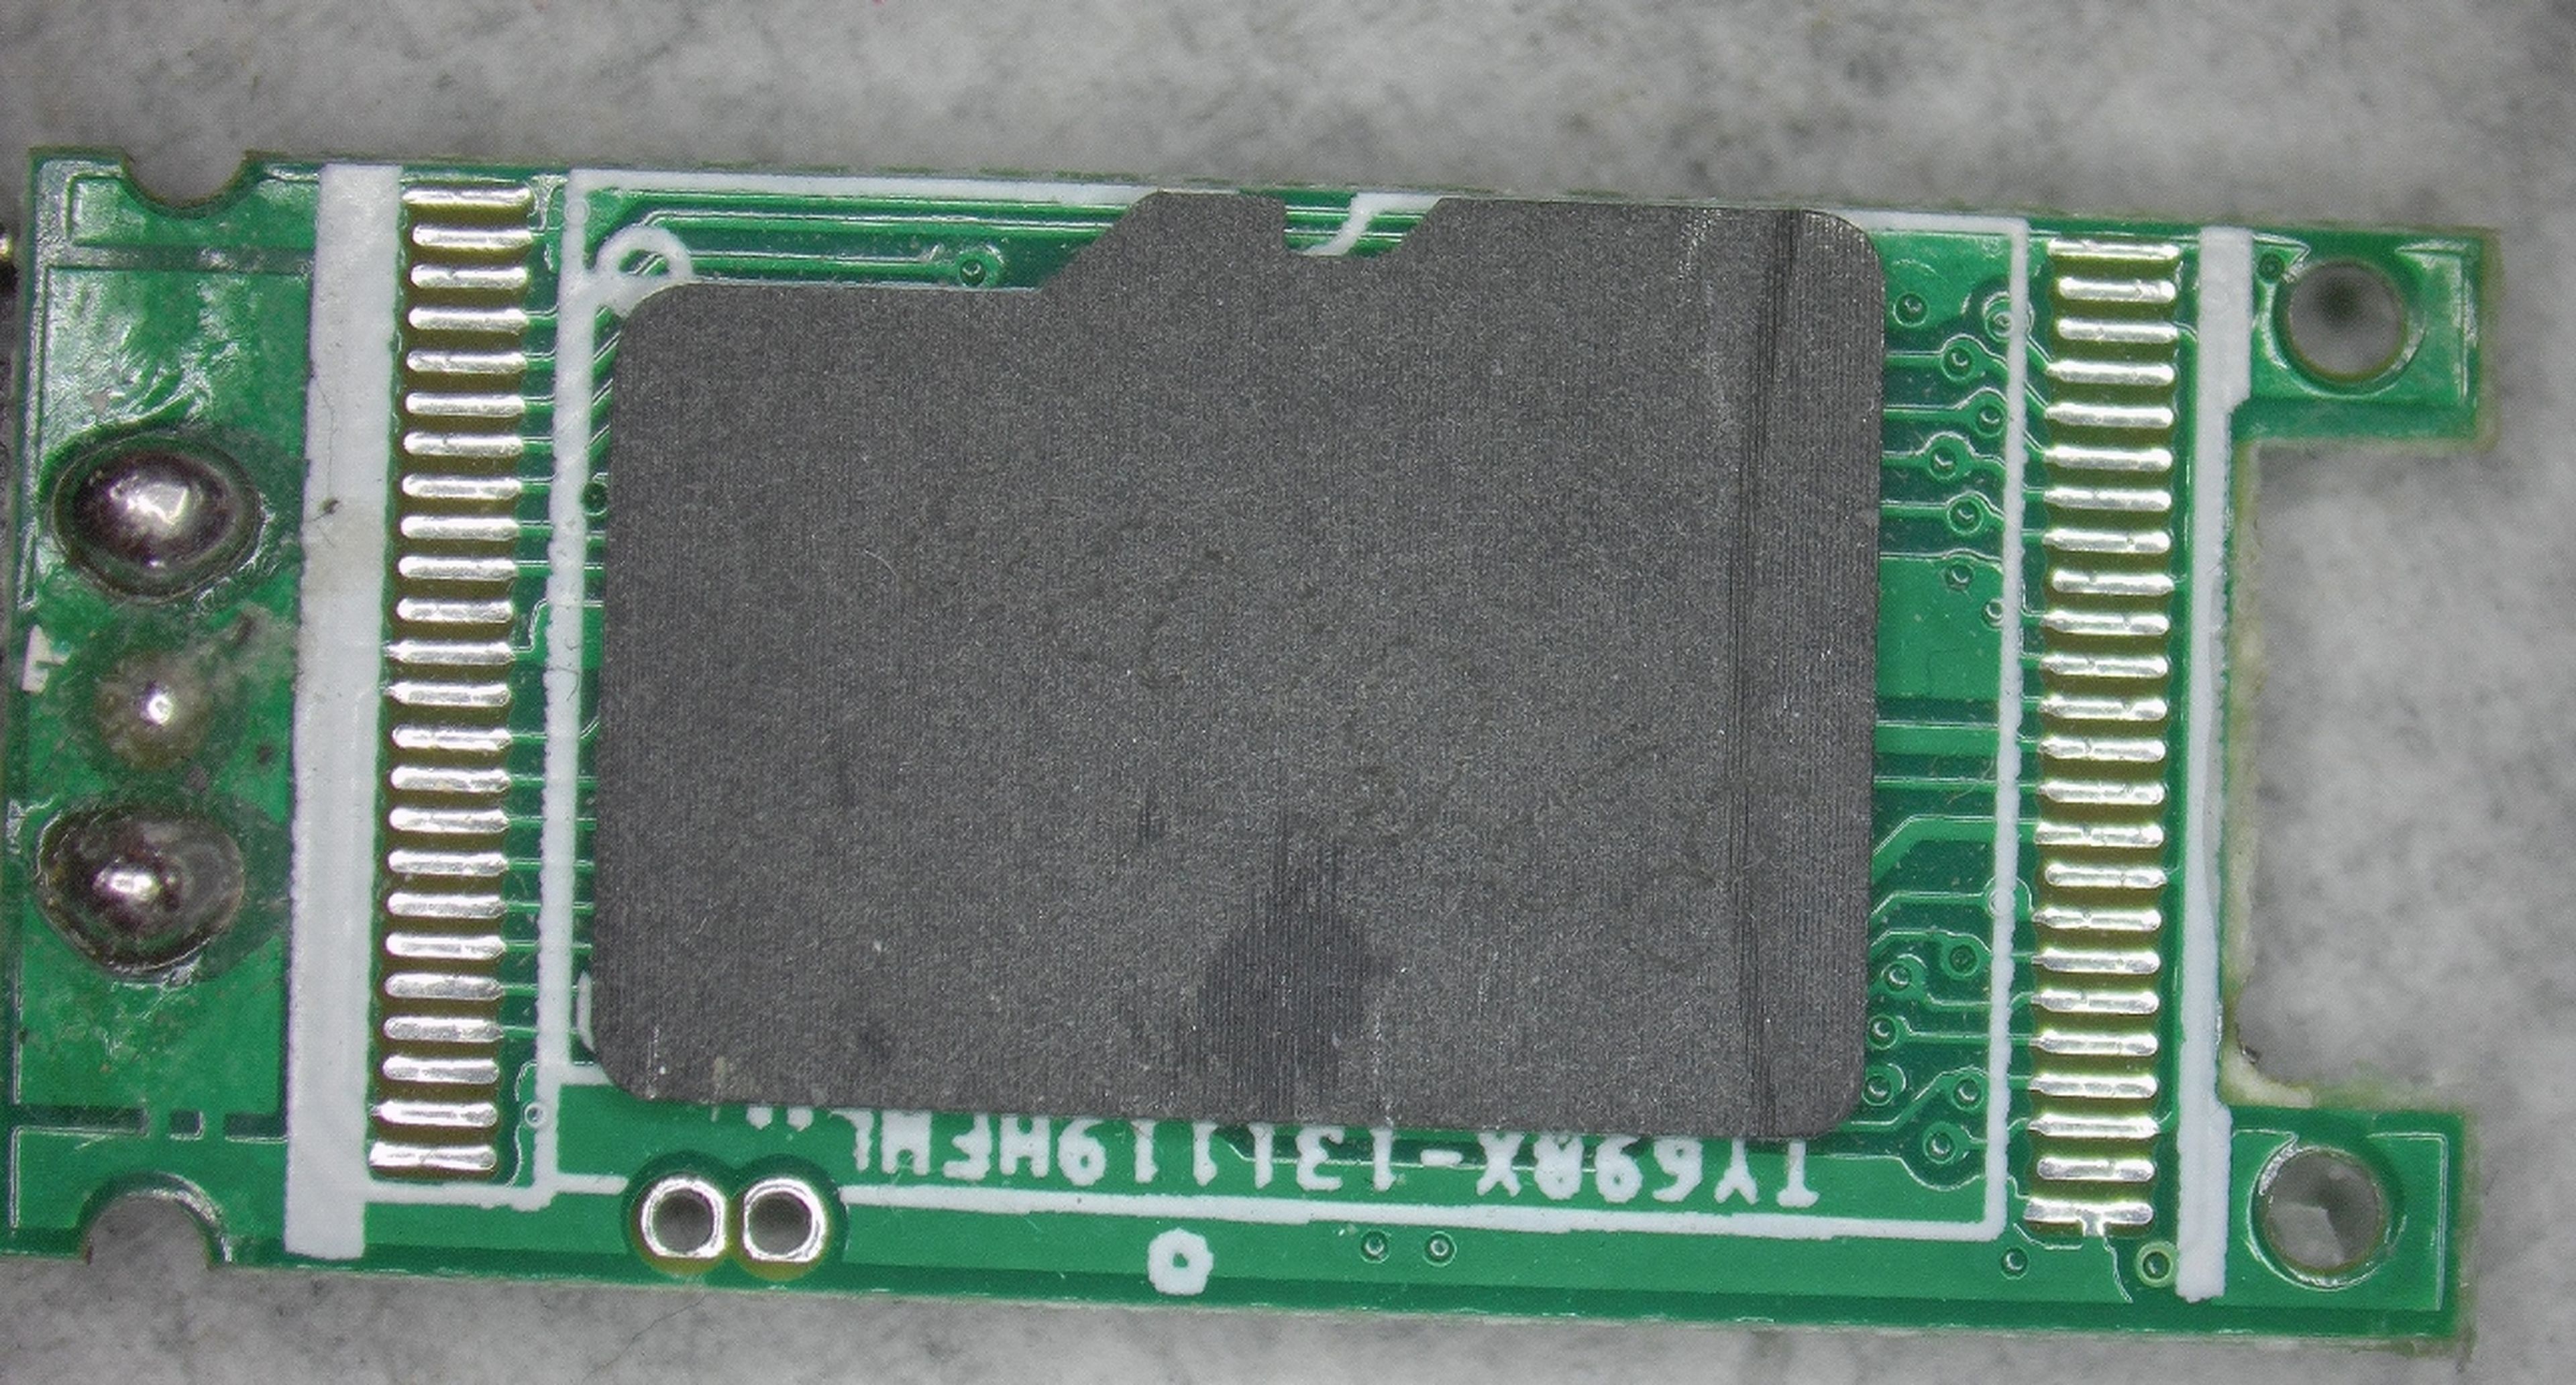 Esta unidad flash USB utiliza una tarjeta microSD de origen desconocido como chip NAND.  Fuente: CBL.